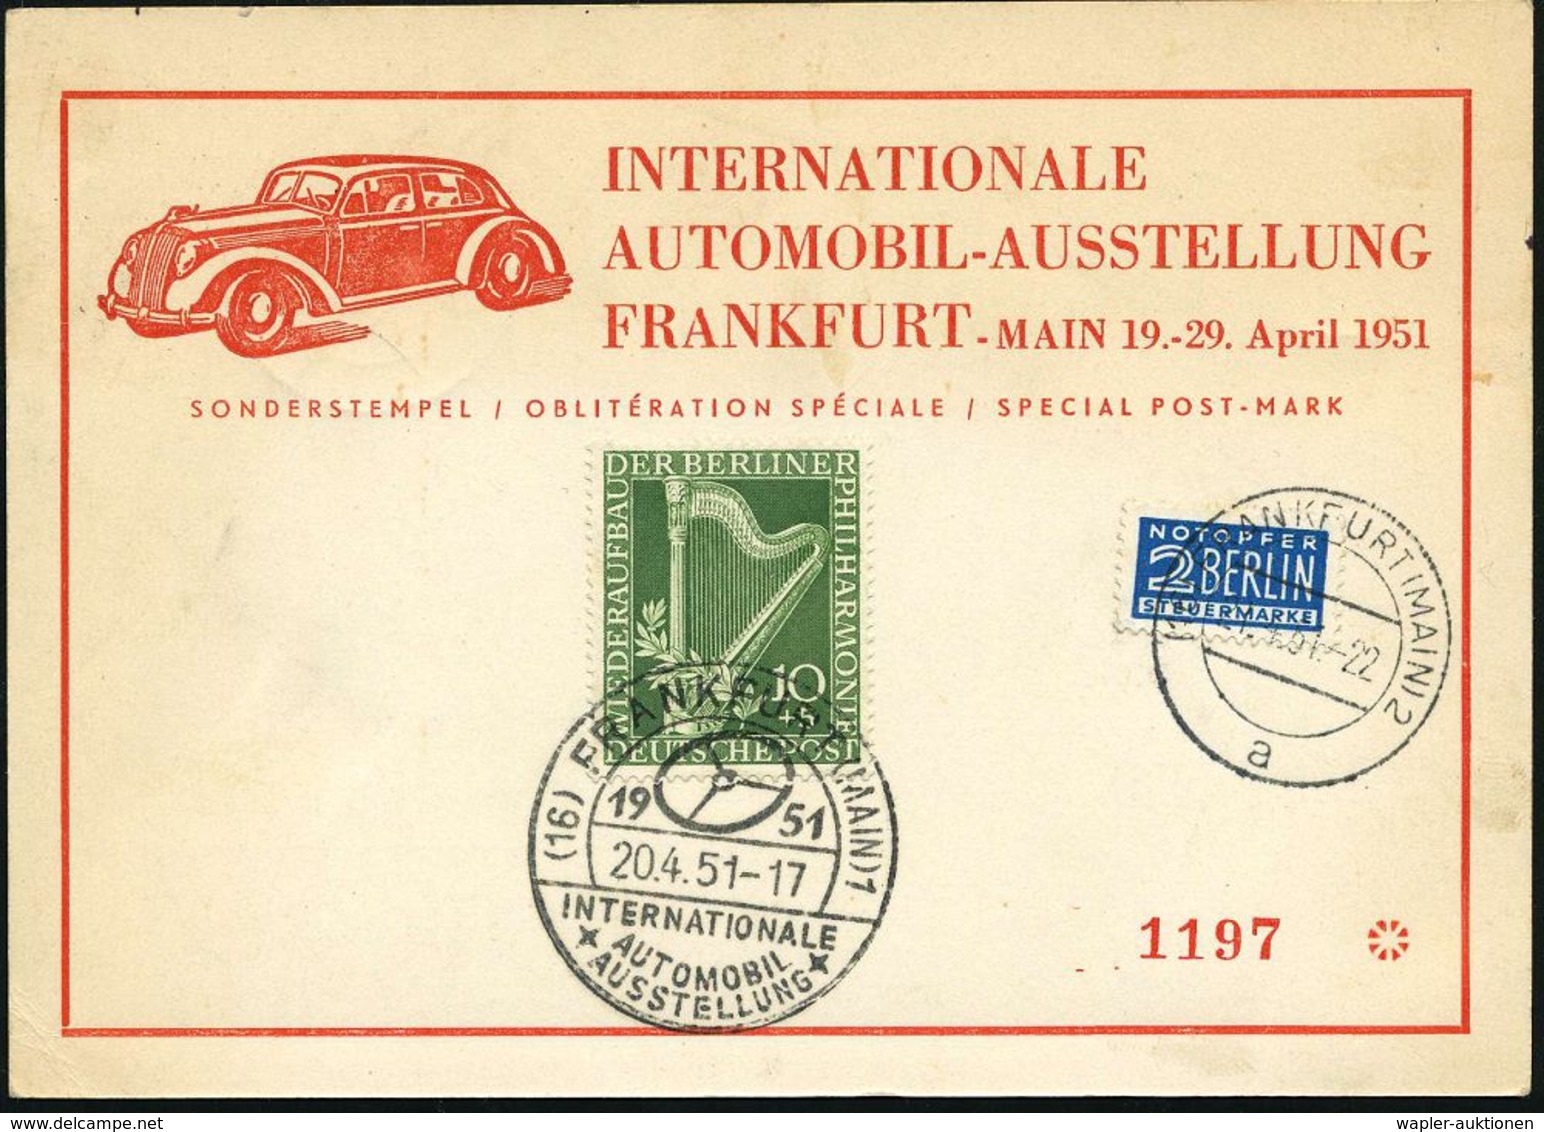 AUTO-, MOTORRAD-AUSSTELLUNGEN : (16) FRANKFURT (MAIN)1/ INT./ AUTOMOBIL-/ AUSSTELLUNG 1951 (23.4.) SSt (PKW-Steuerrad) K - Autos